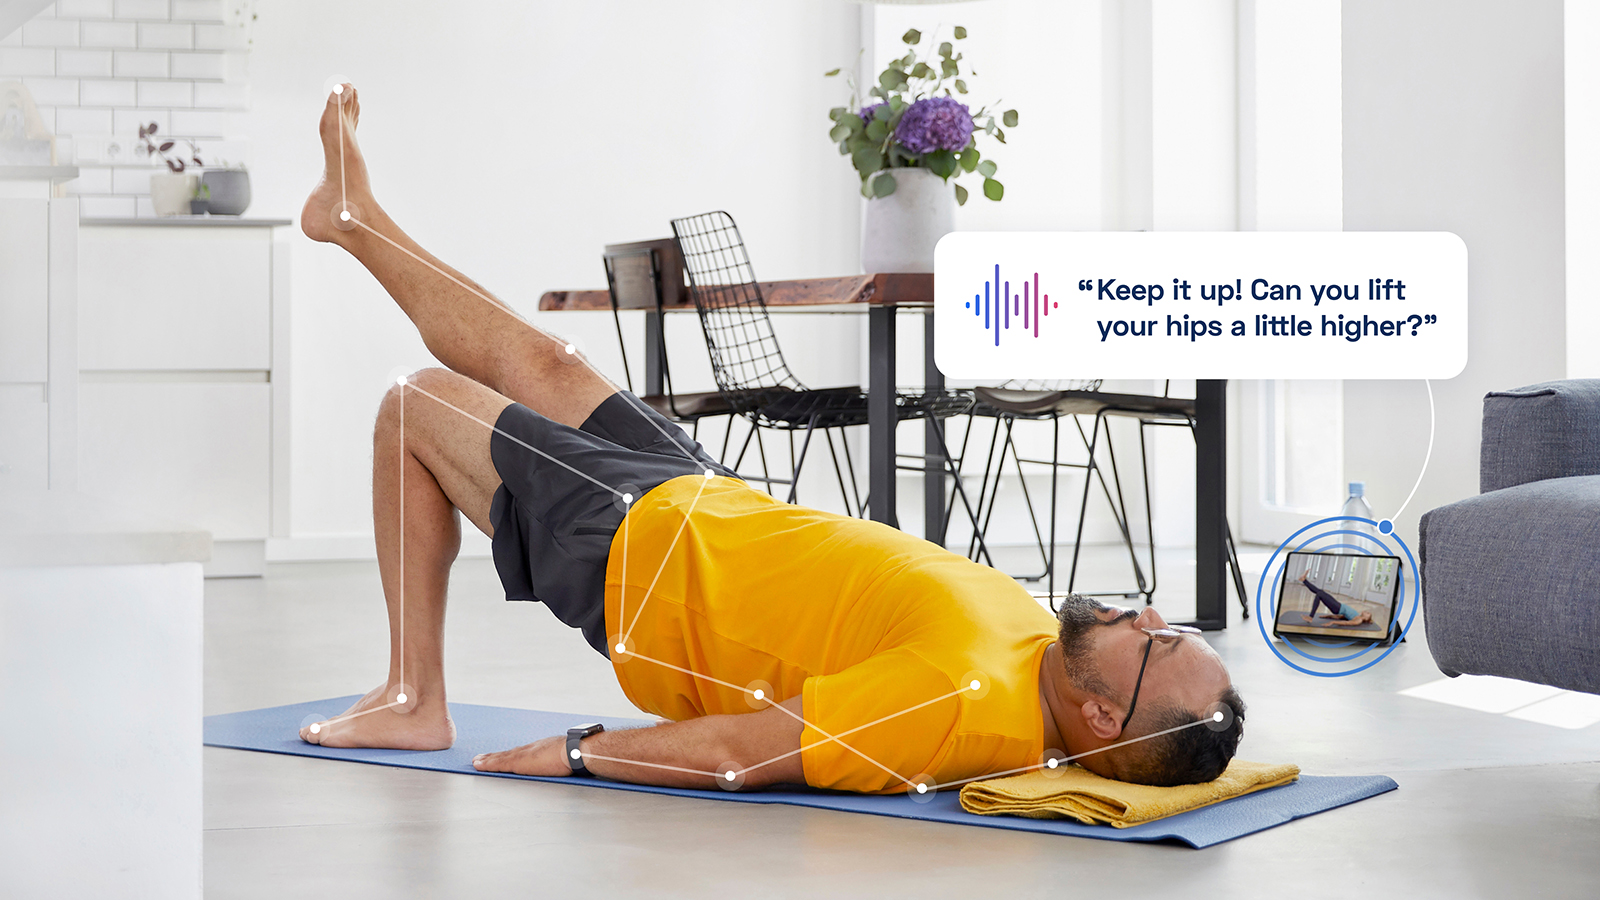 Kaia Health App: Digital Coach against chronic back pain